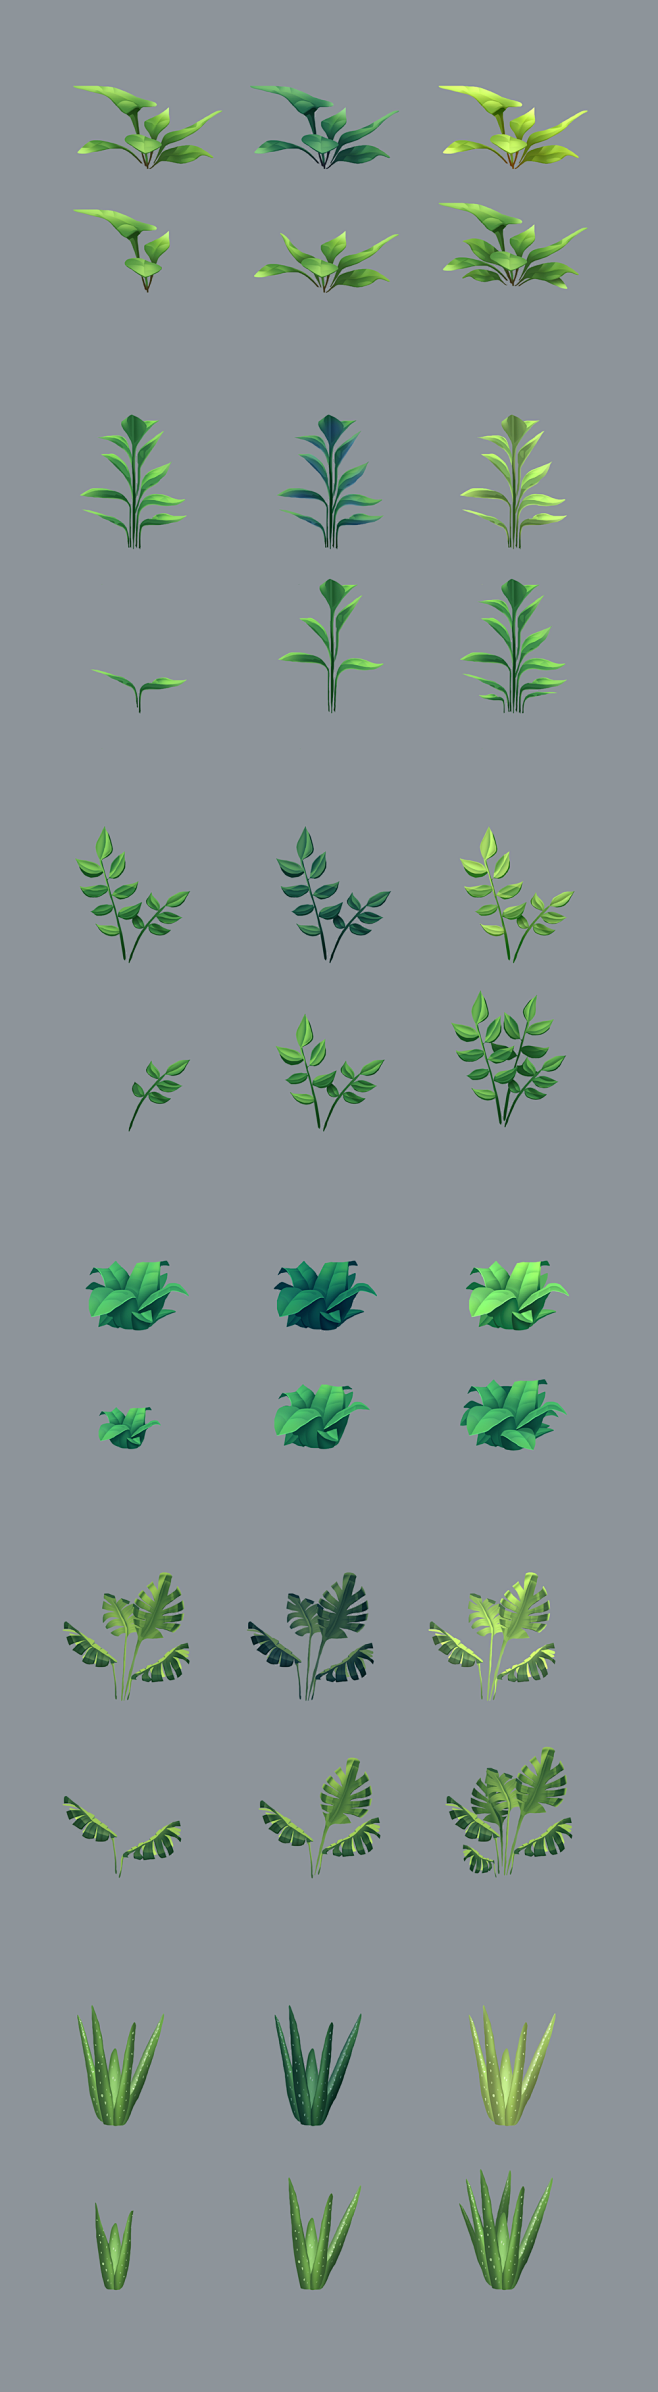 Plant Concepts